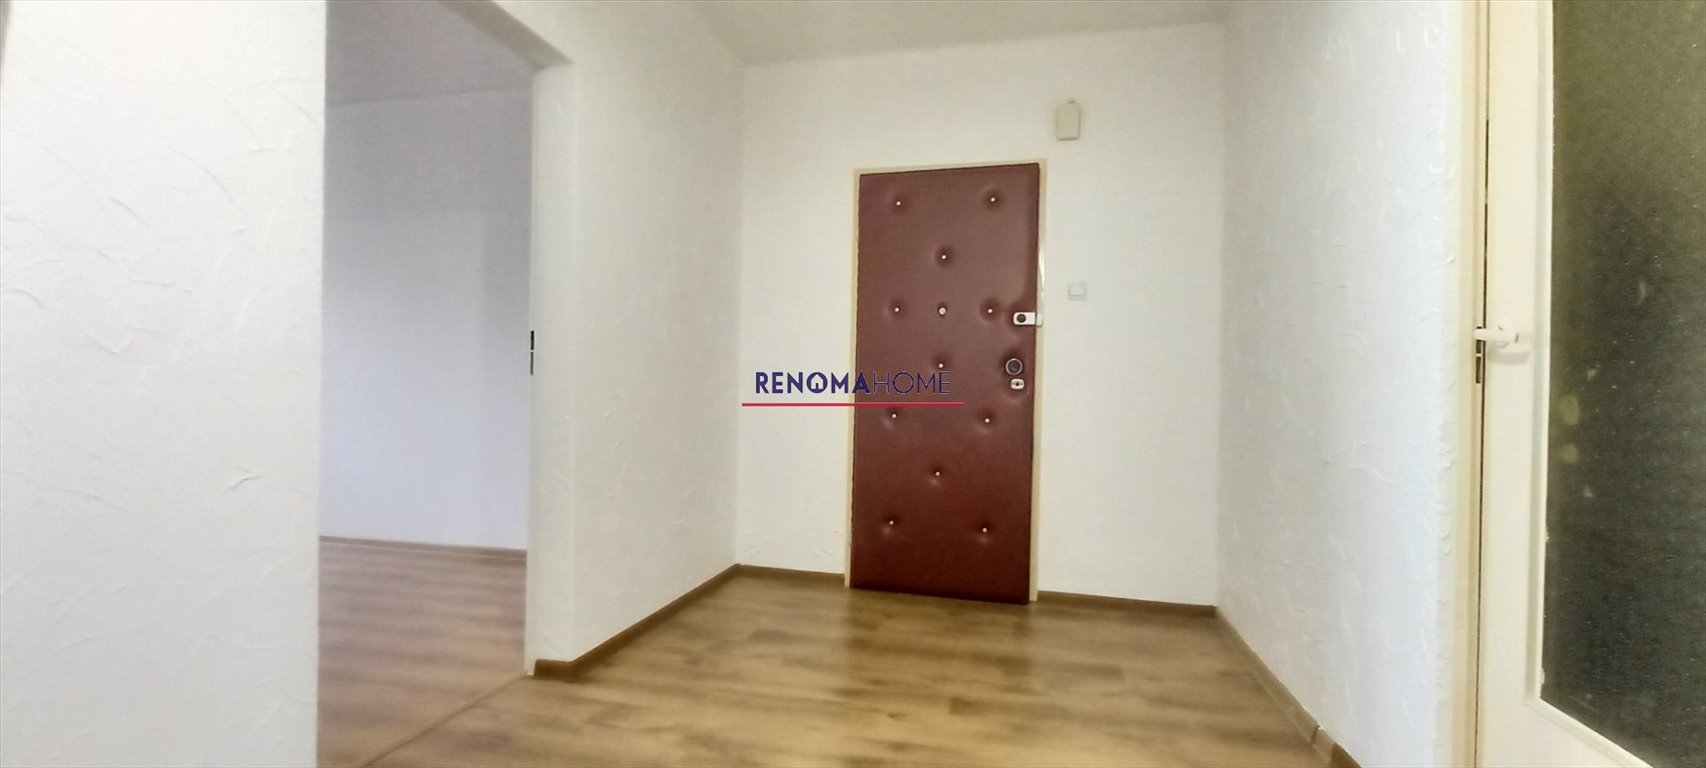 Mieszkanie trzypokojowe na sprzedaż Legnica  65m2 Foto 9